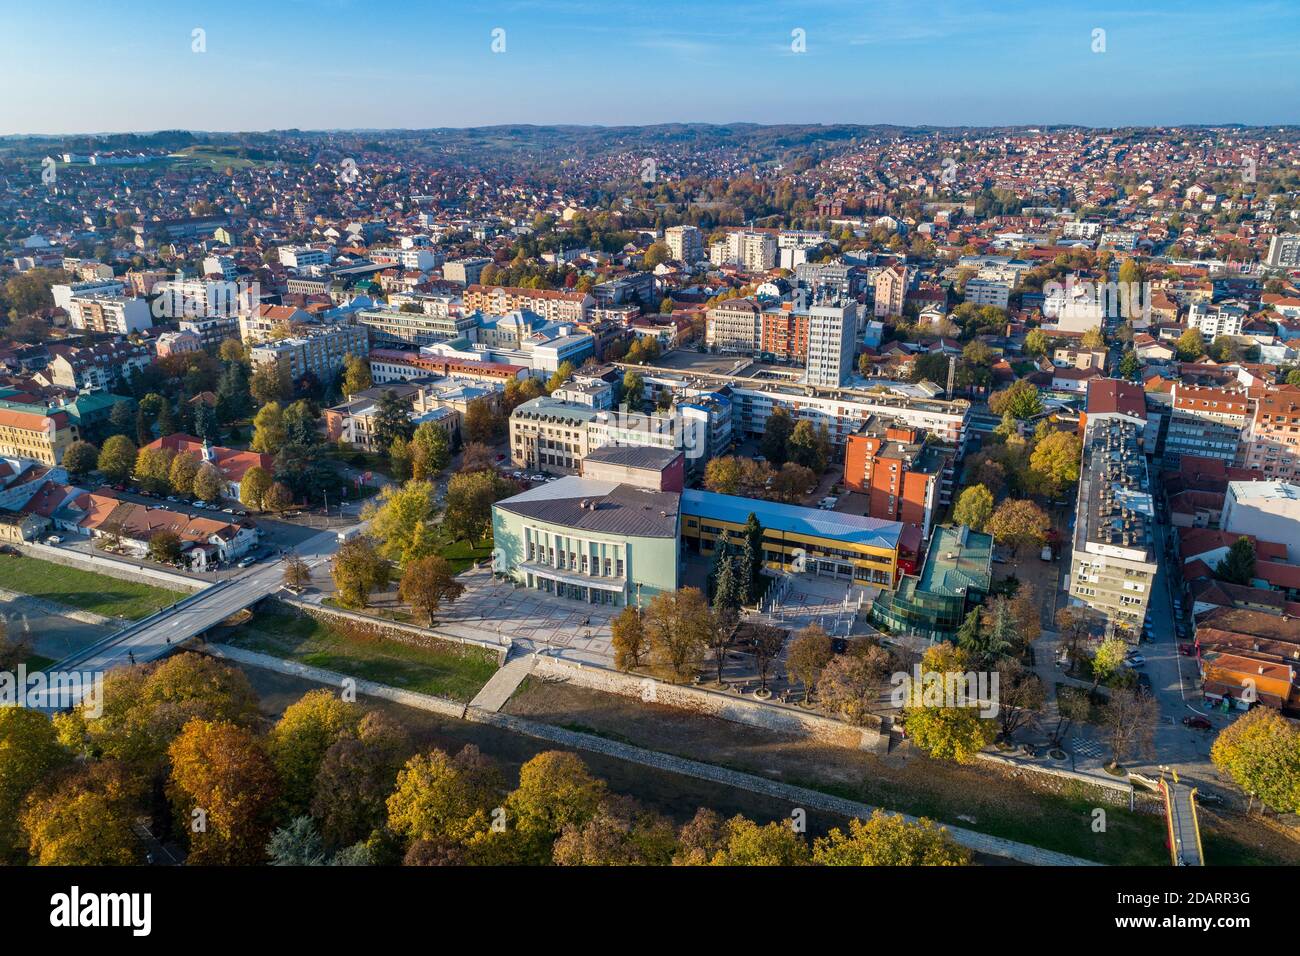 Vue aérienne sur le centre-ville de Valjevo, Serbie. Panorama du centre administratif du district de Kolubara en Serbie occidentale Banque D'Images